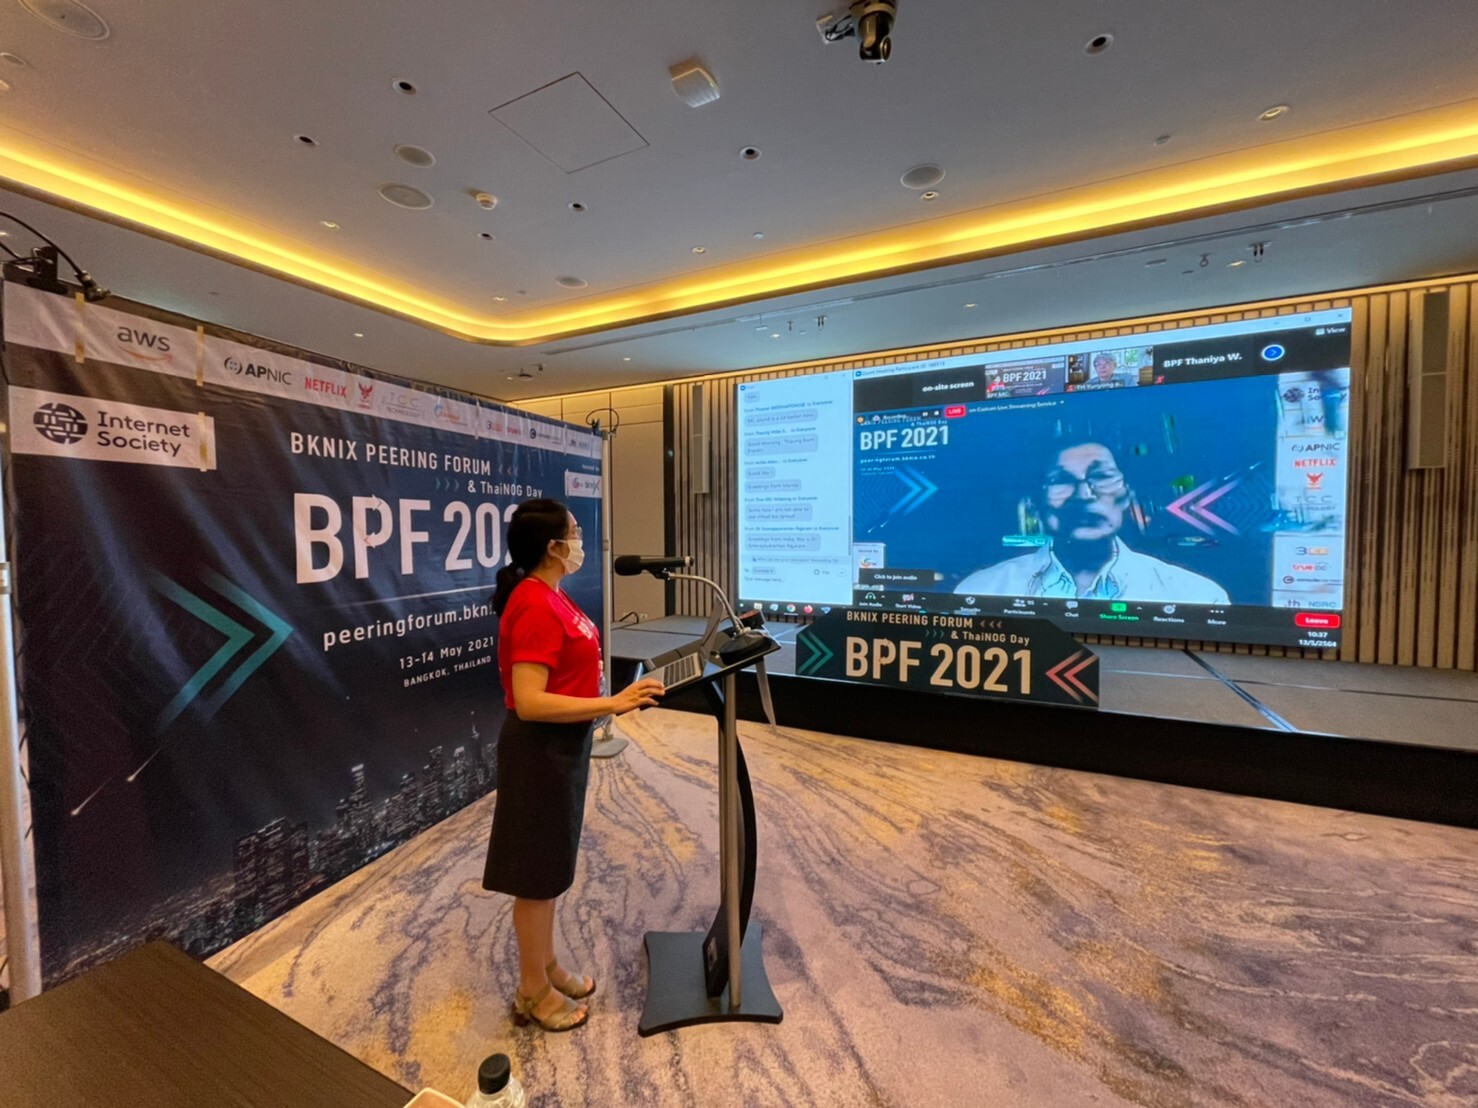 ทีเอชนิค-บีเคนิกซ์ จัดประชุมออนไลน์ระดับภูมิภาค BKNIX Peering Forum 2021 ผสานความร่วมมือนานาชาติ พัฒนาภาพรวมอินเทอร์เน็ตไทย